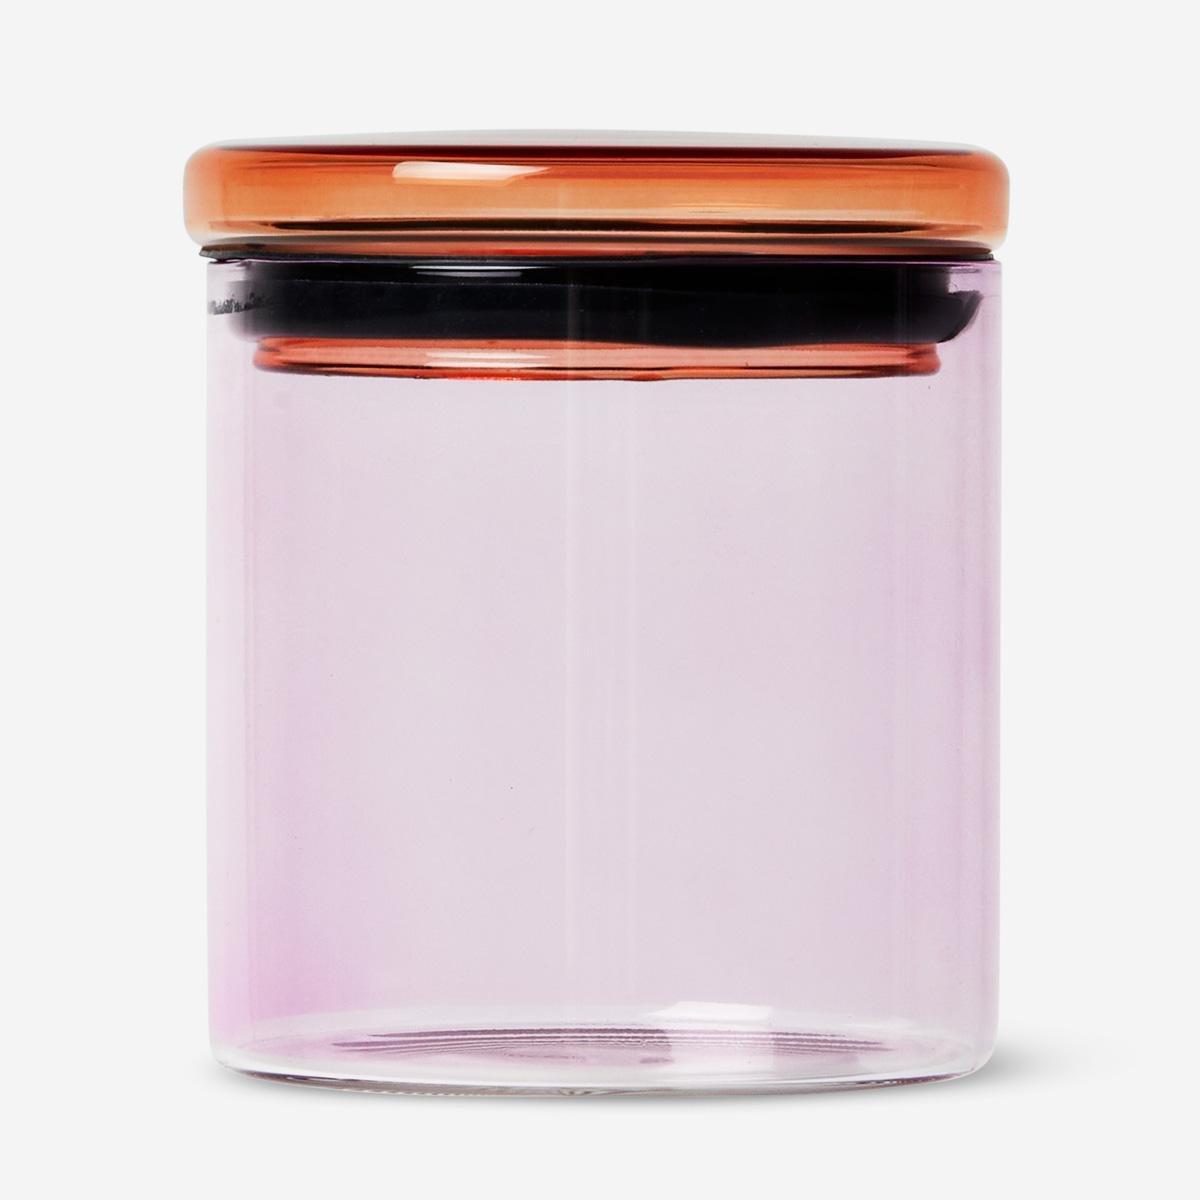 Orange glass jar. 11 cm